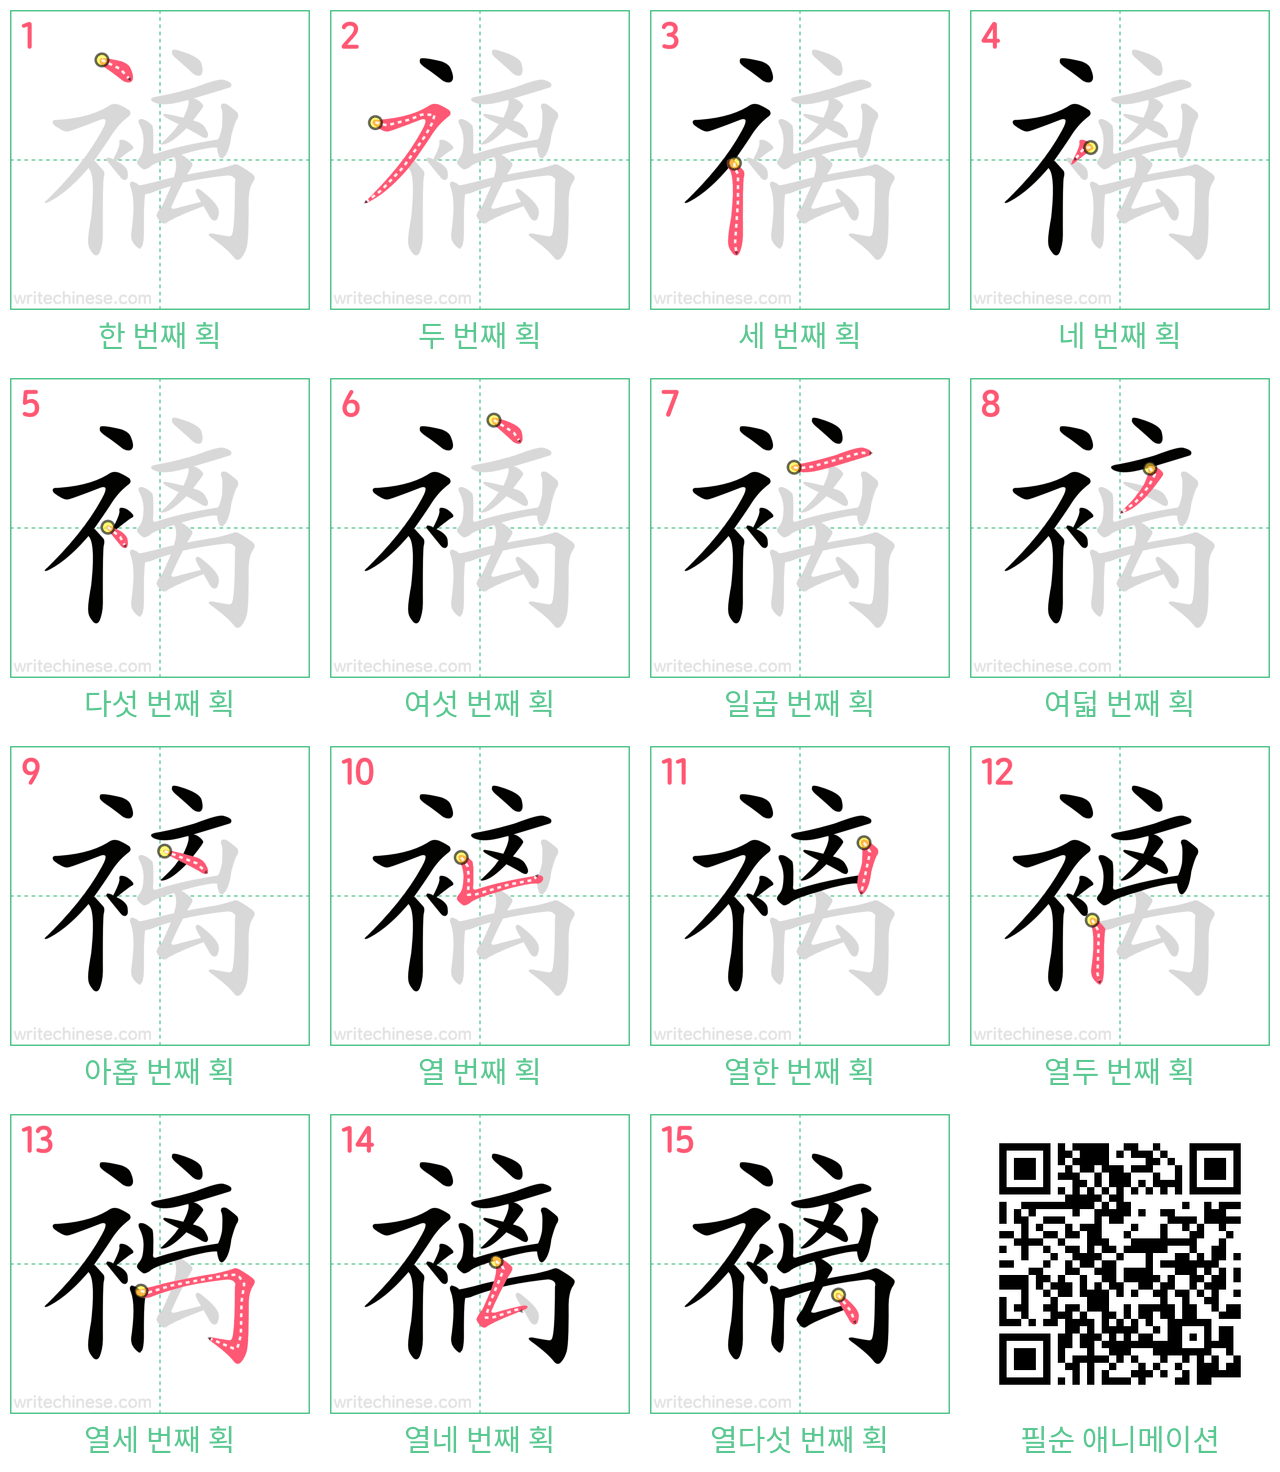 褵 step-by-step stroke order diagrams